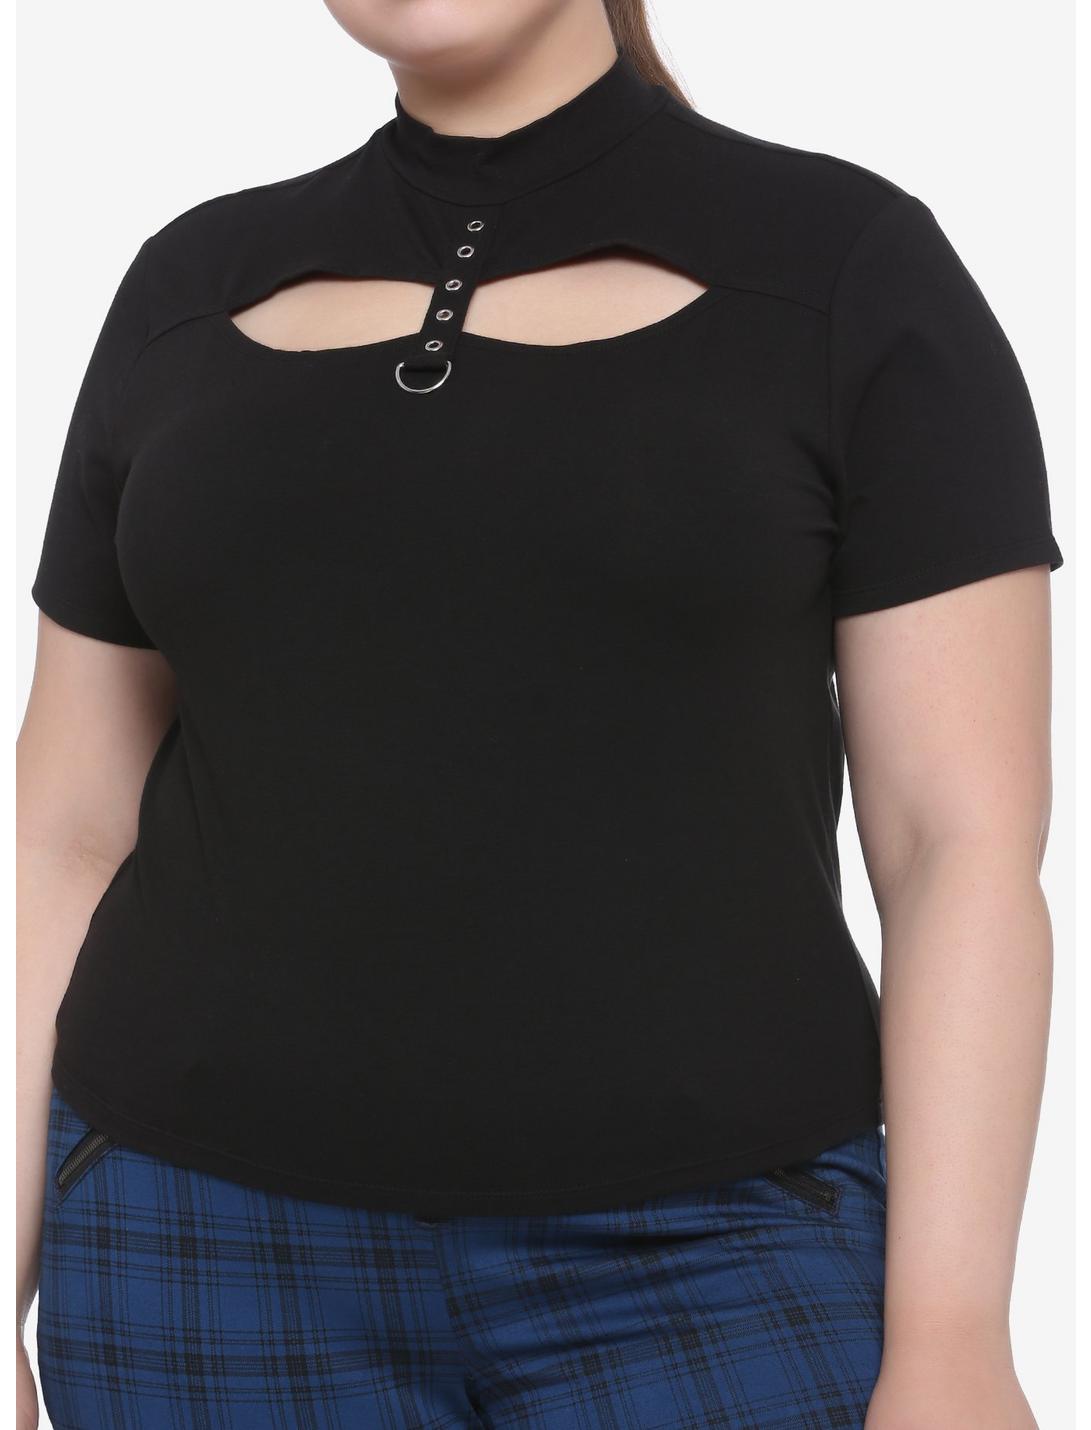 Grommet & D-Ring Strap Mock Neck Cutout Girls Crop T-Shirt Plus Size, BLACK, hi-res